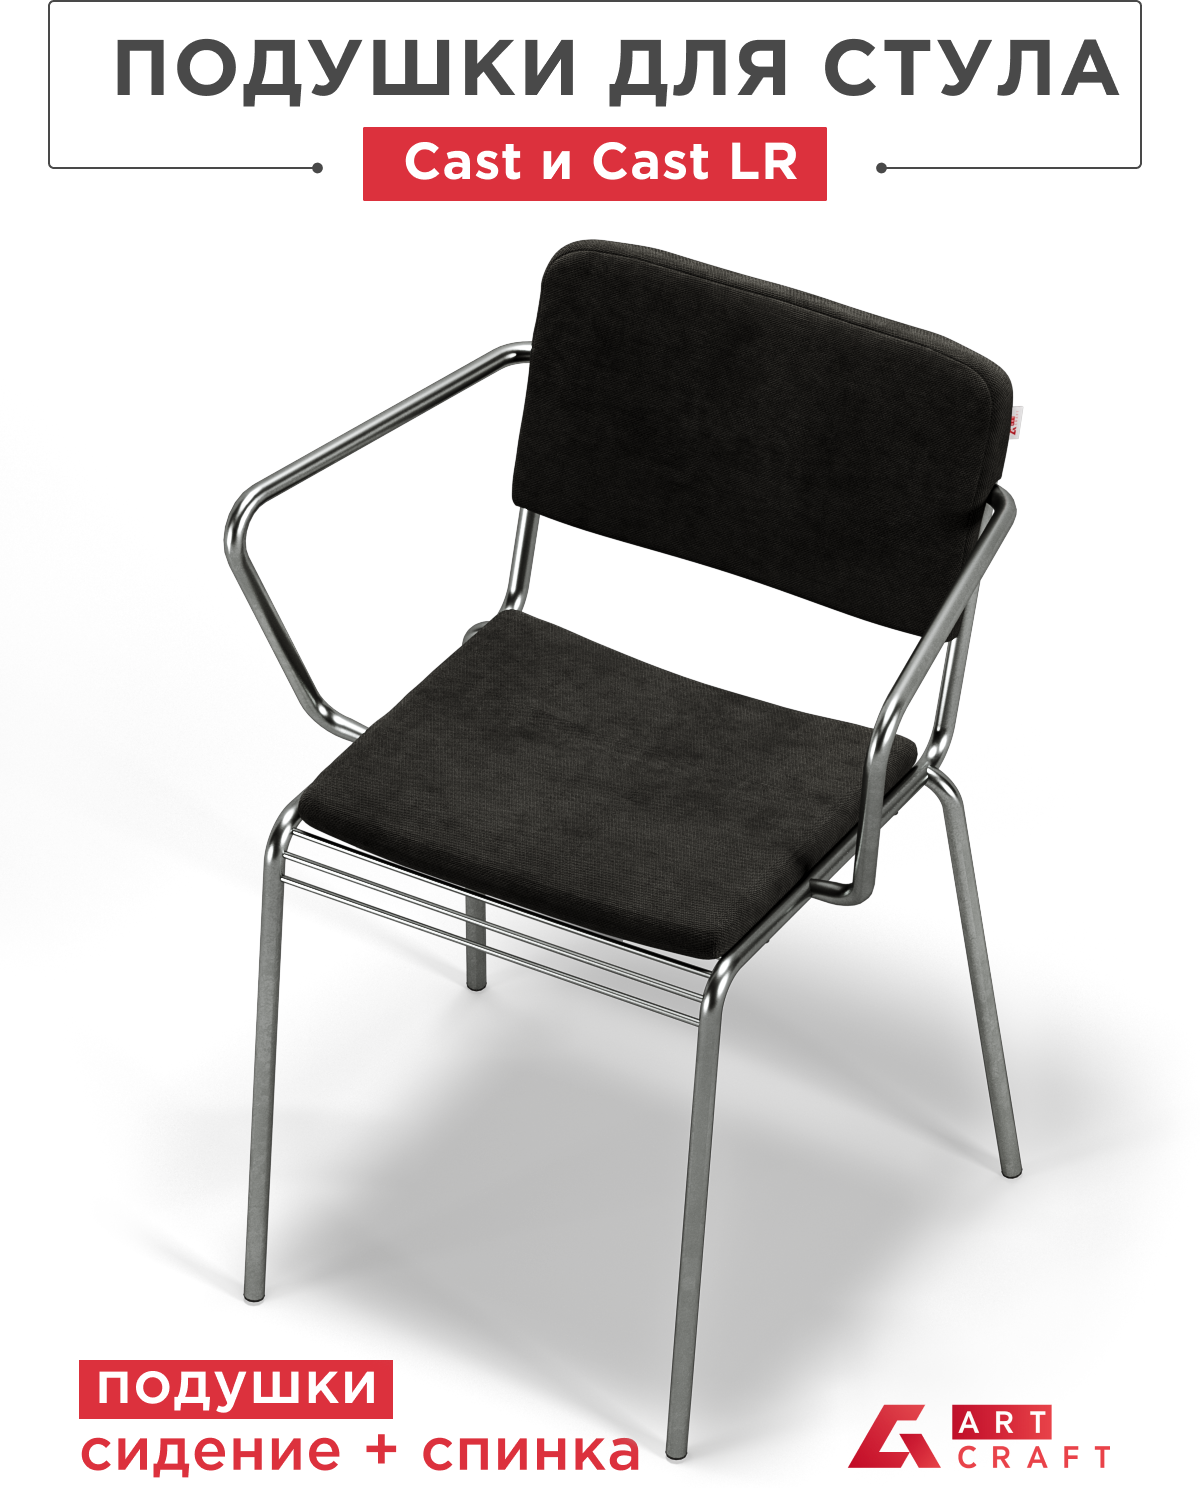 ArtCraft / Подушки на стул Cast и Cast LR, комплект подушек на стул сидение + спинка, цвет чёрный